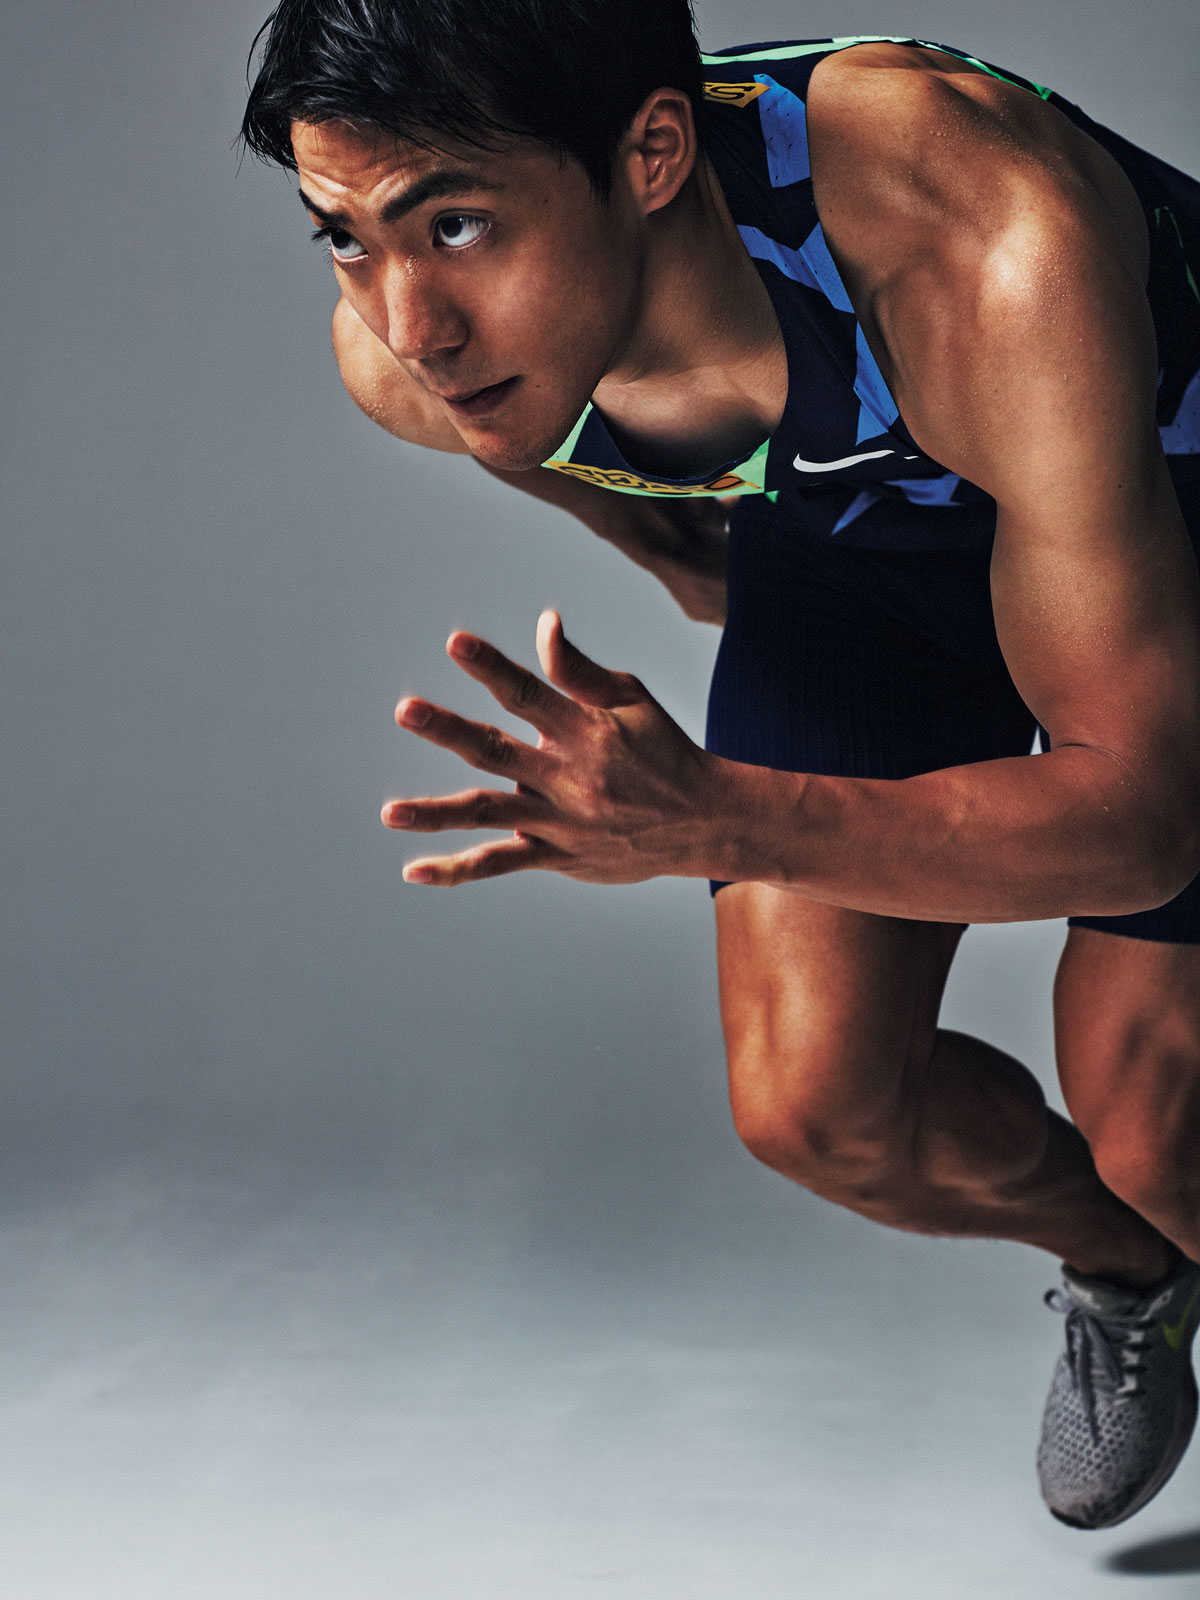 この夏のイケメン日本代表選手 男子100m 山縣亮太 さんが語るファッションとスプリントについて Fashion Safari Online